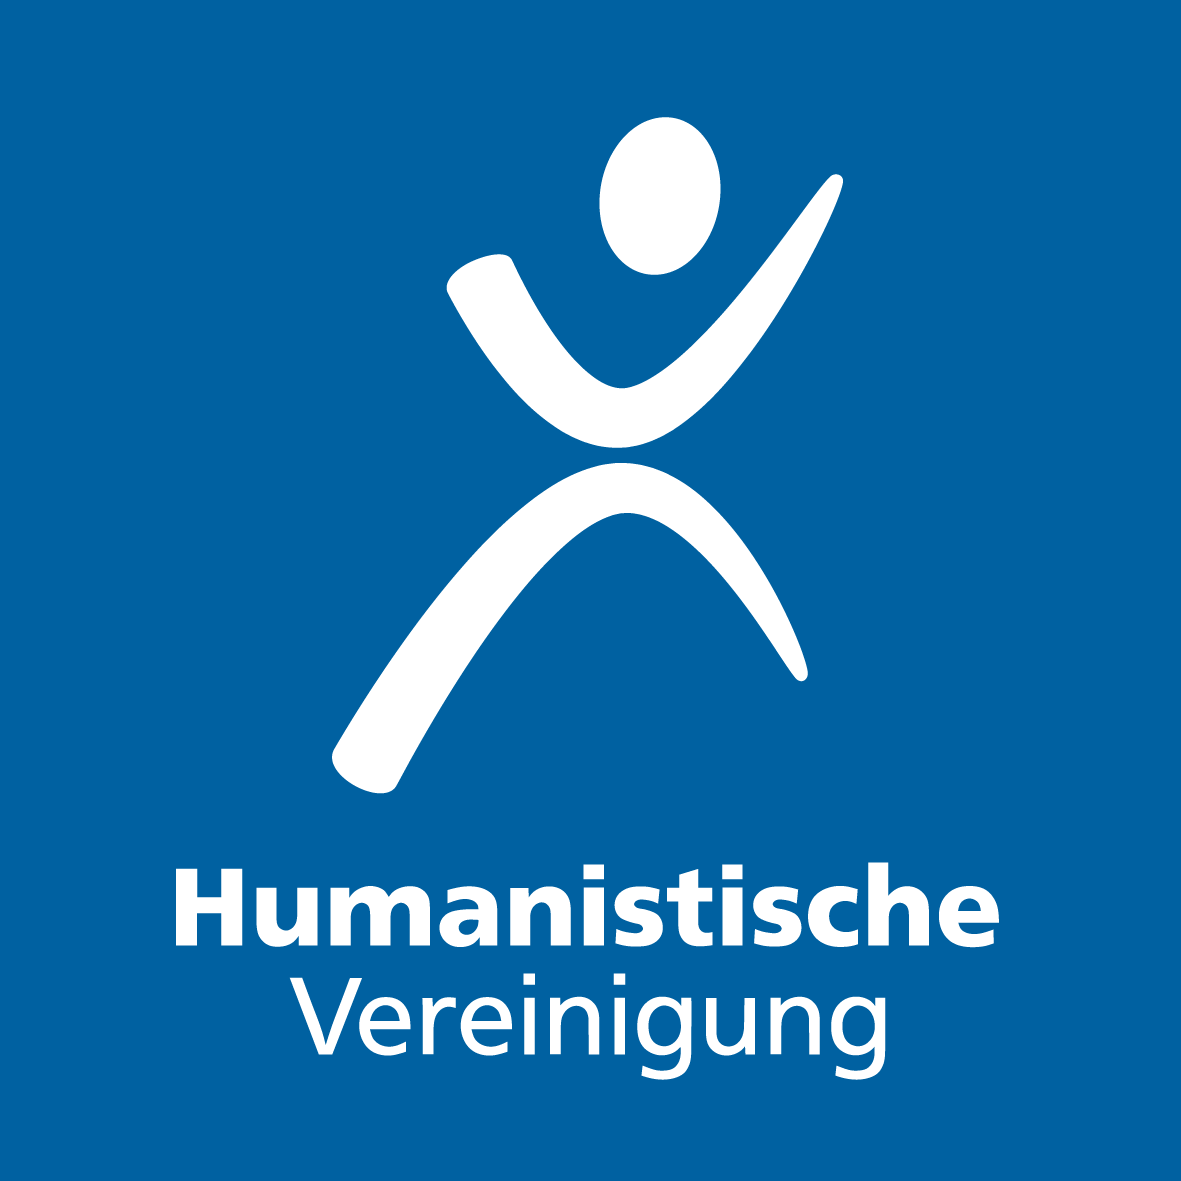 03.07.2022 / 11:00 -14:00 Uhr Philosophisches Frühstück mit Thomas Galli / Veranstalter: Humanistische Vereinigung